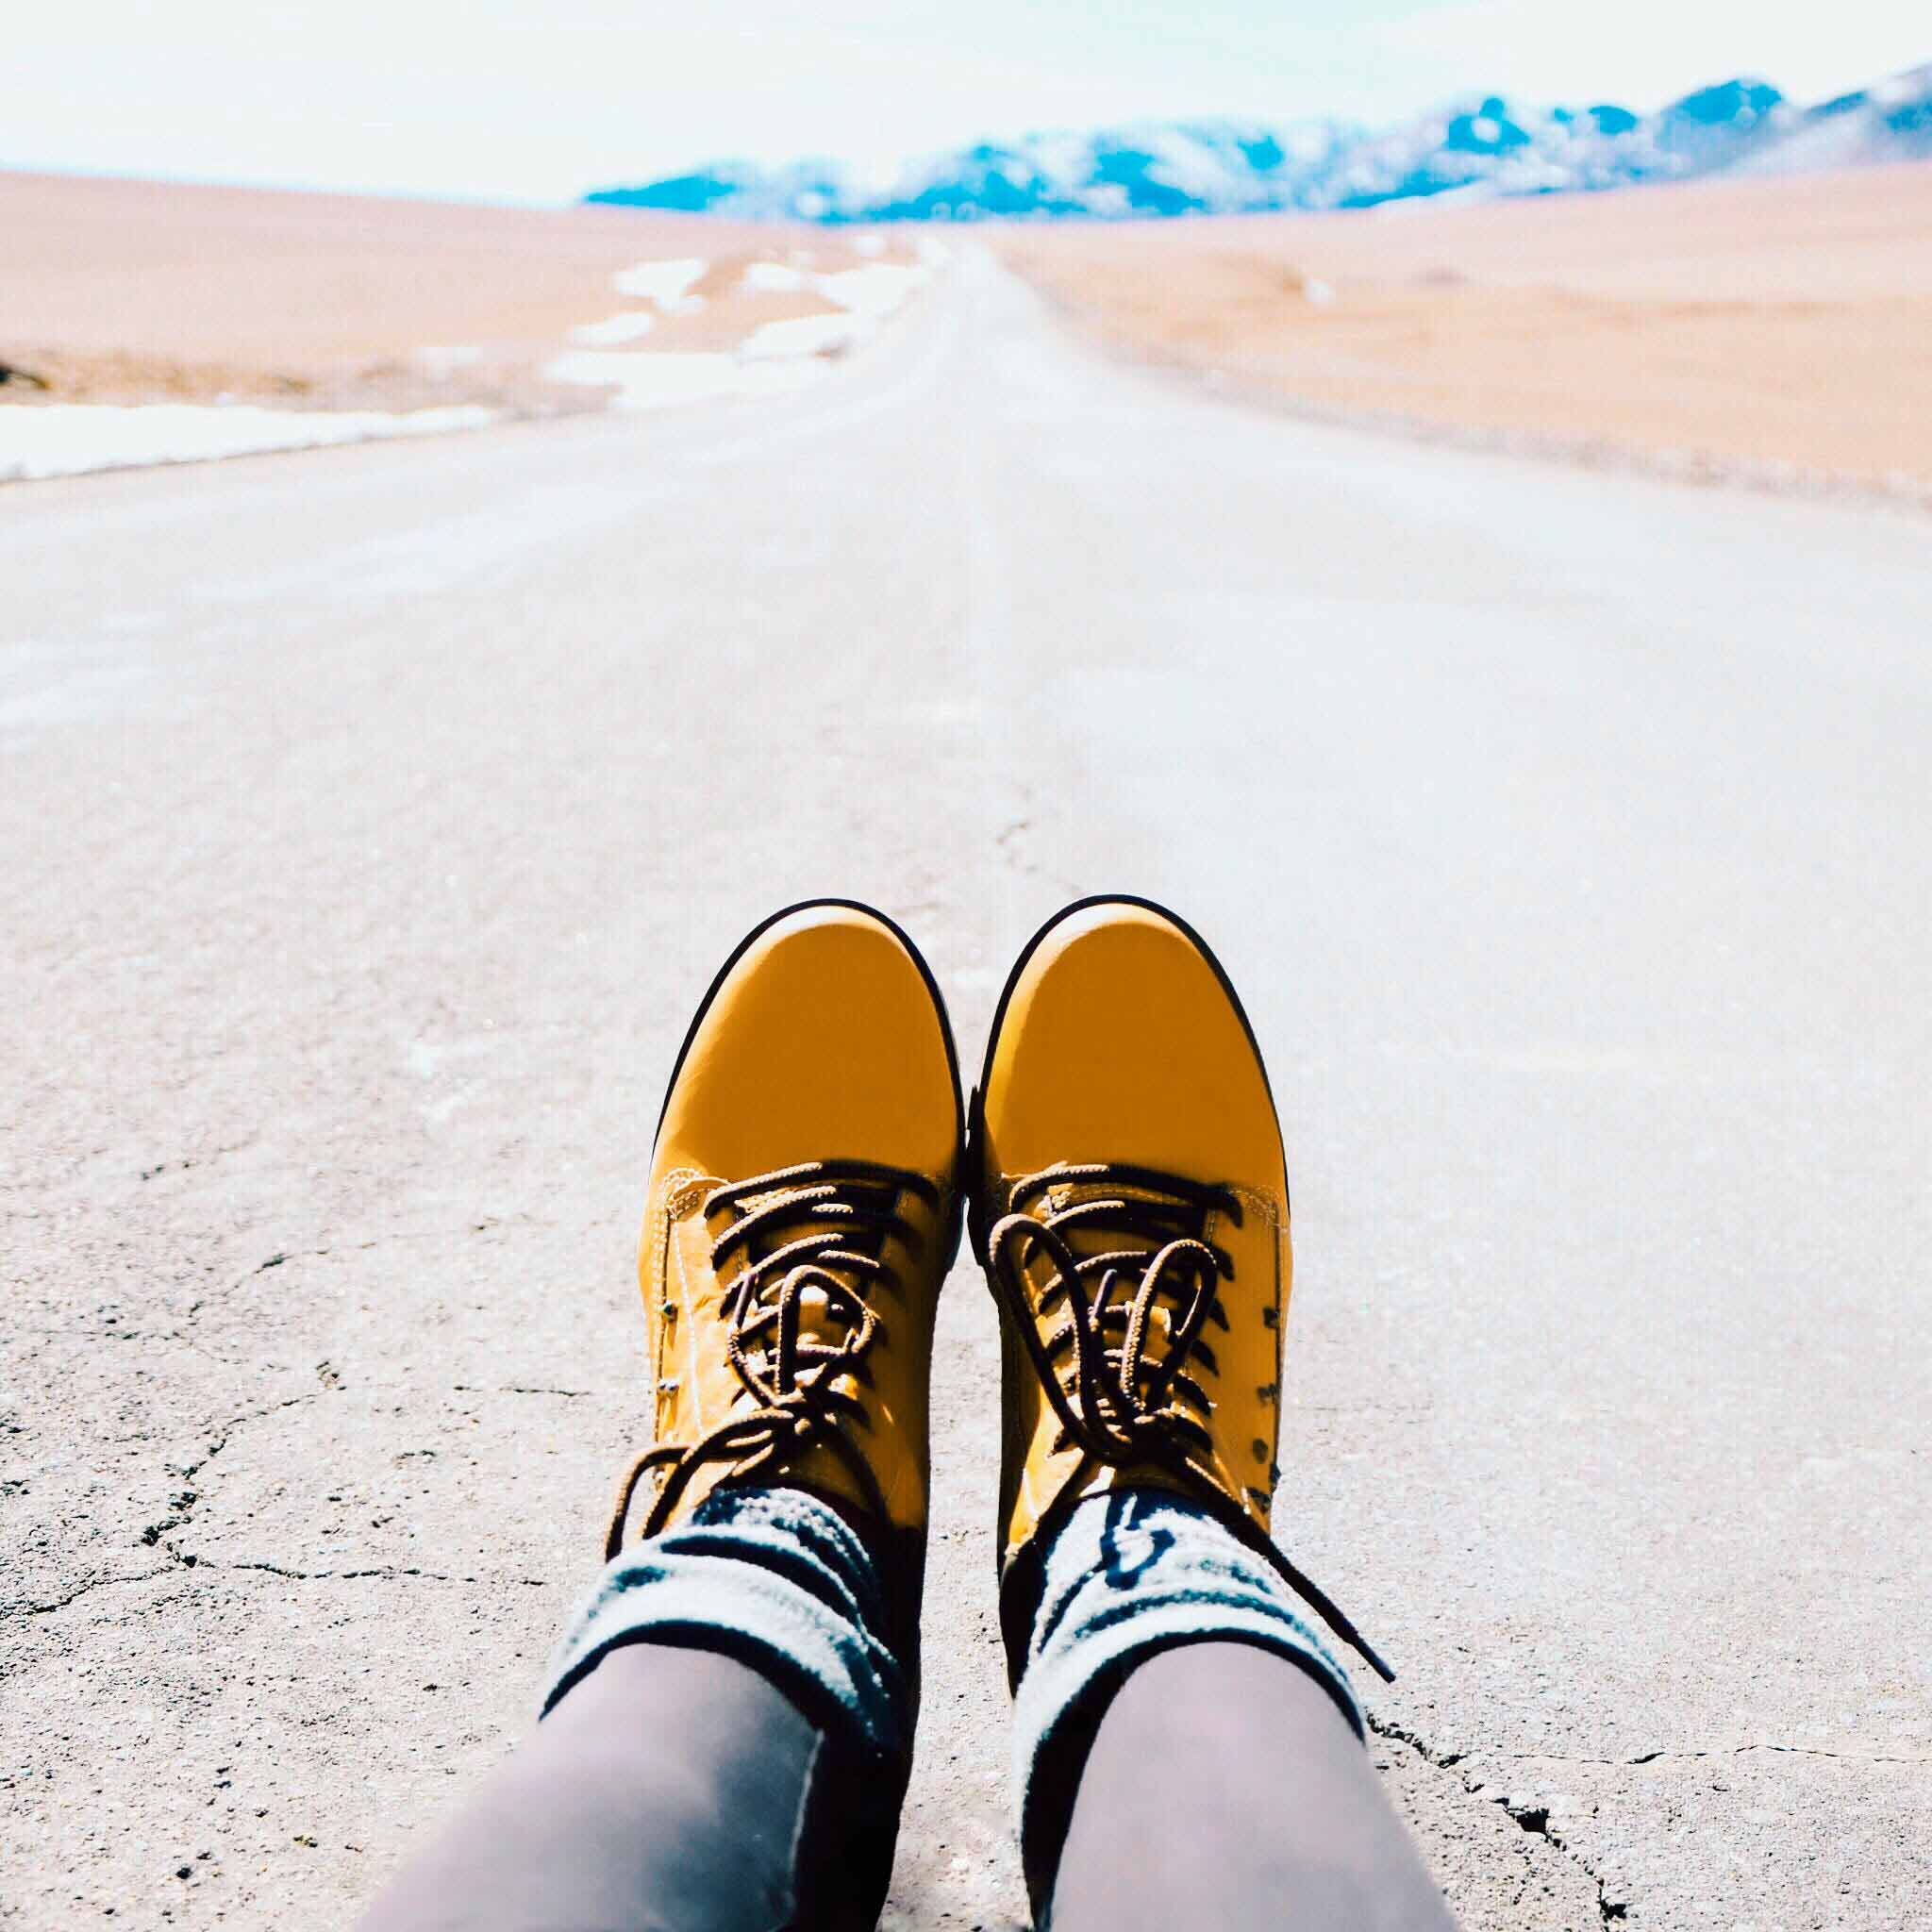 Botas amarelas numa estrada no Deserto do Atacama